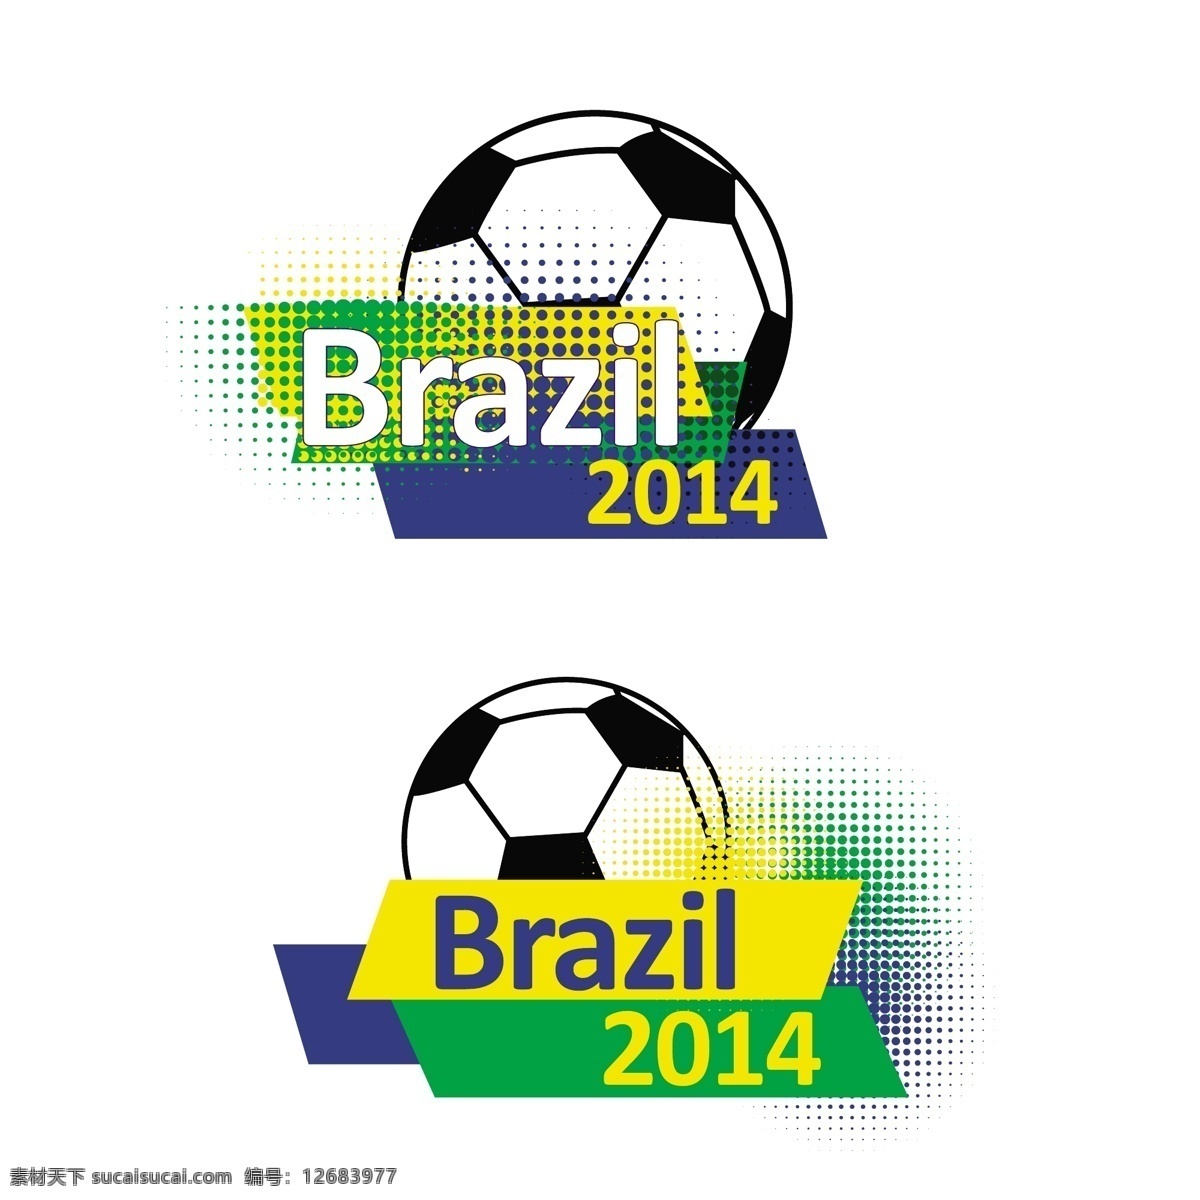 足球图标 足球 图标 模板下载 2014 巴西 梦幻背景 炫彩背景 足球广告 足球素材 世界杯 宣传广告 体育运动 生活百科 矢量素材 白色